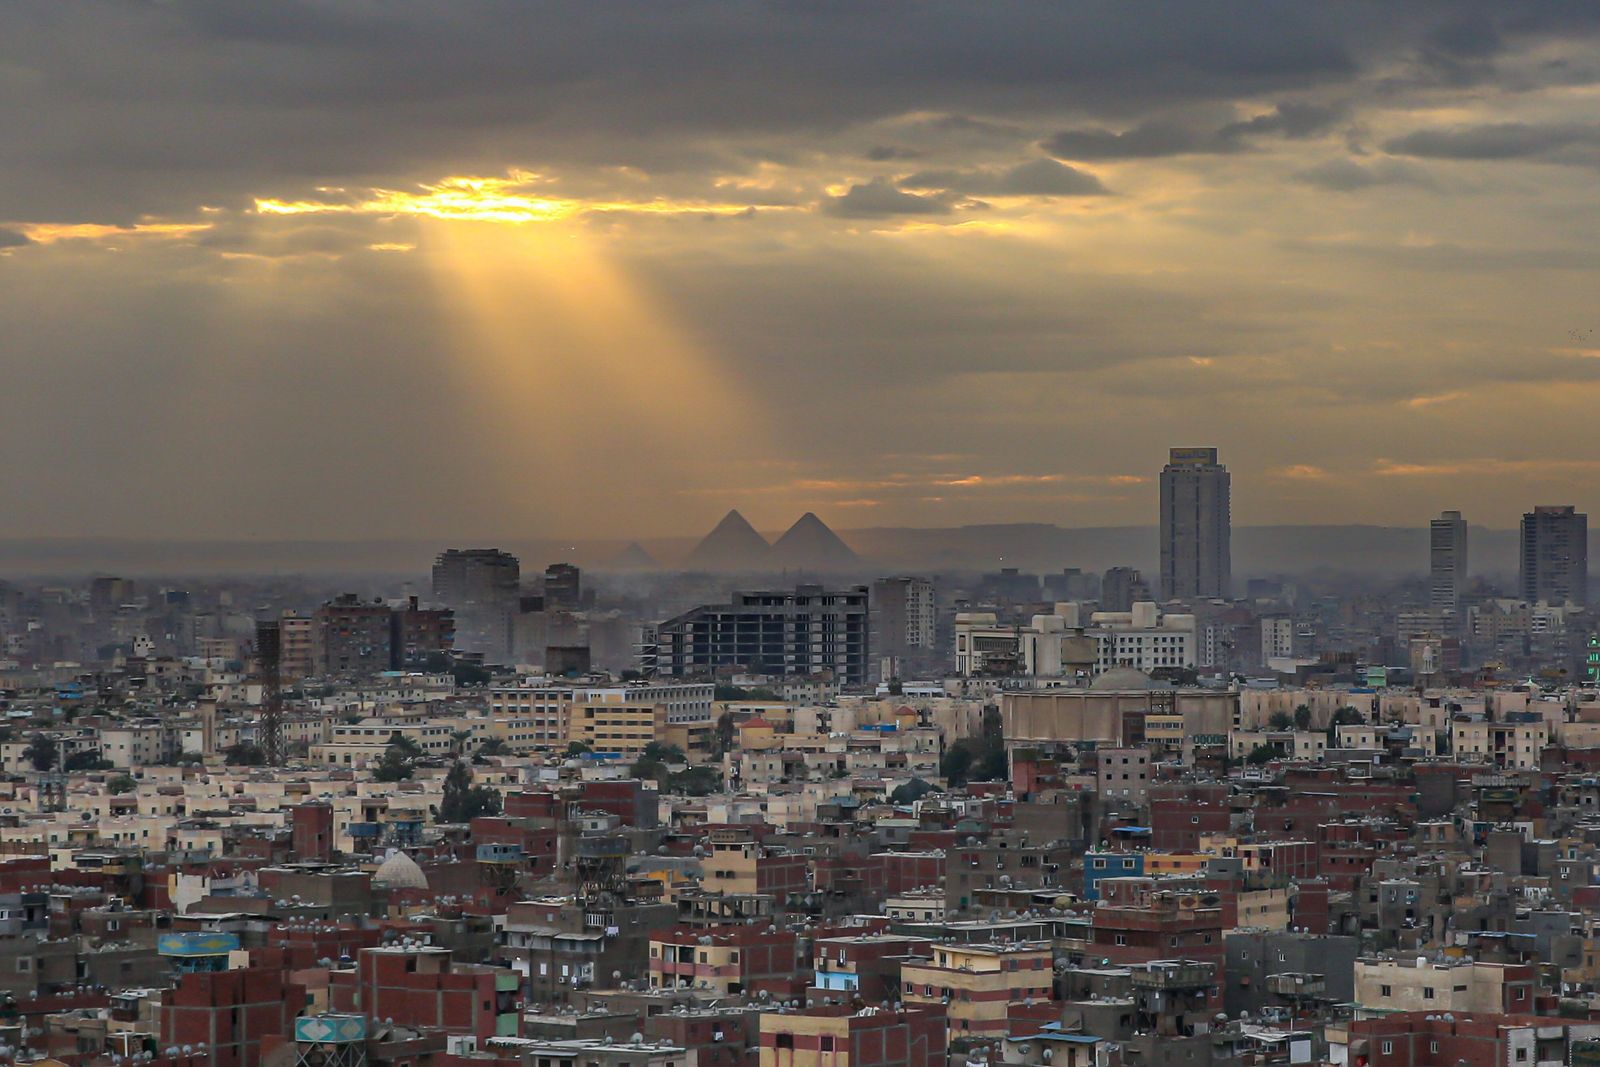 السندات المصرية تقتنص أكبر مكاسب في الأسواق الناشئة بعد رفع الفائدة